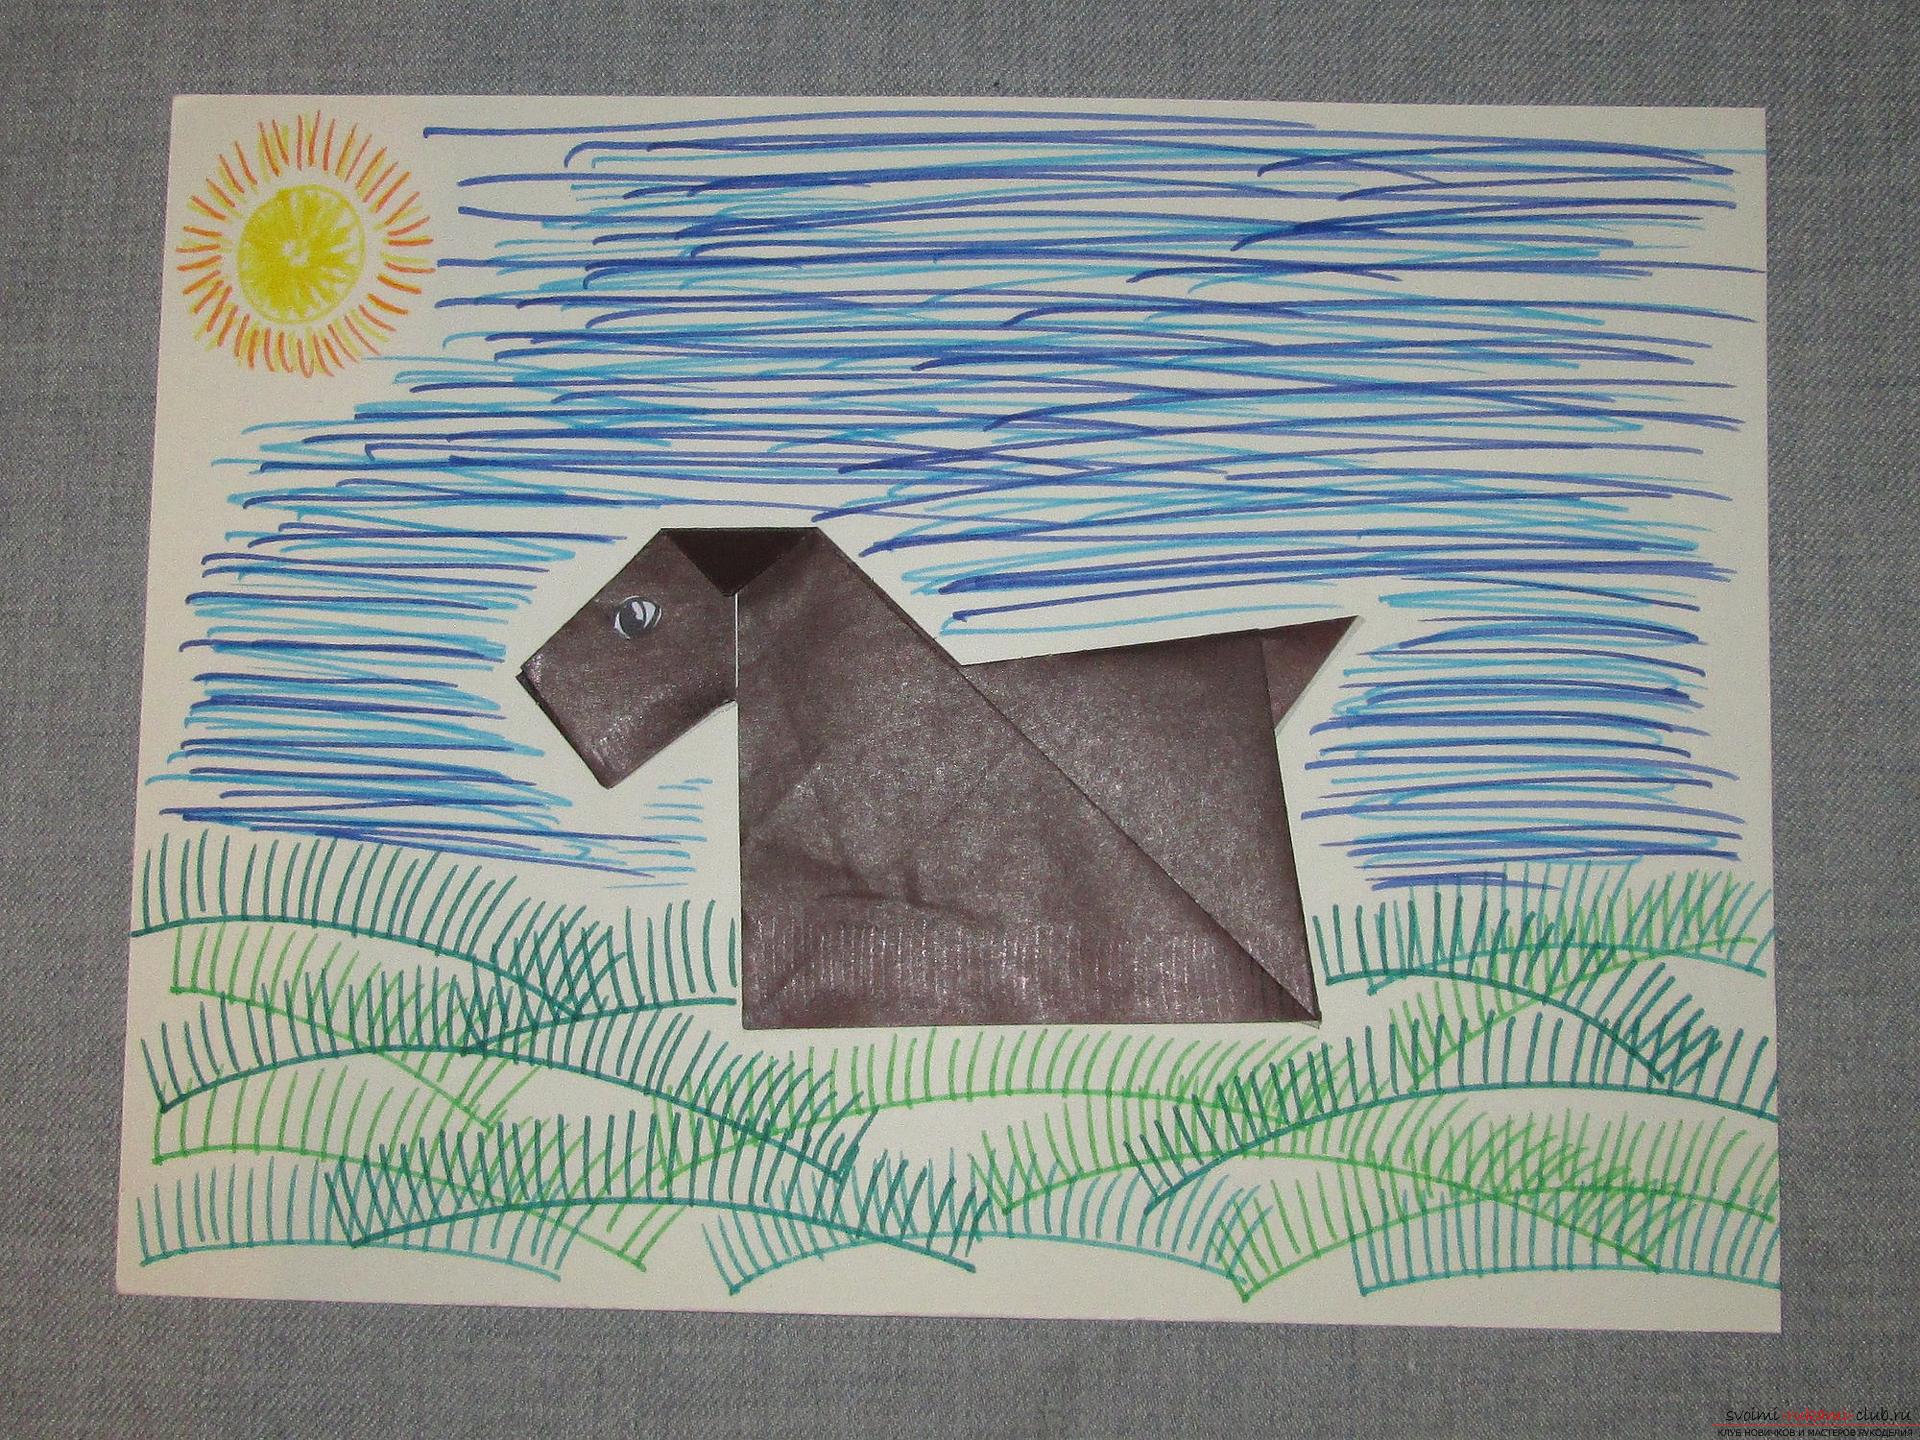 Этот подробный мастер-класс с фото и описание научит как сделать оригами для начинающих - оригами-собаку из бумаги.. Фото №1